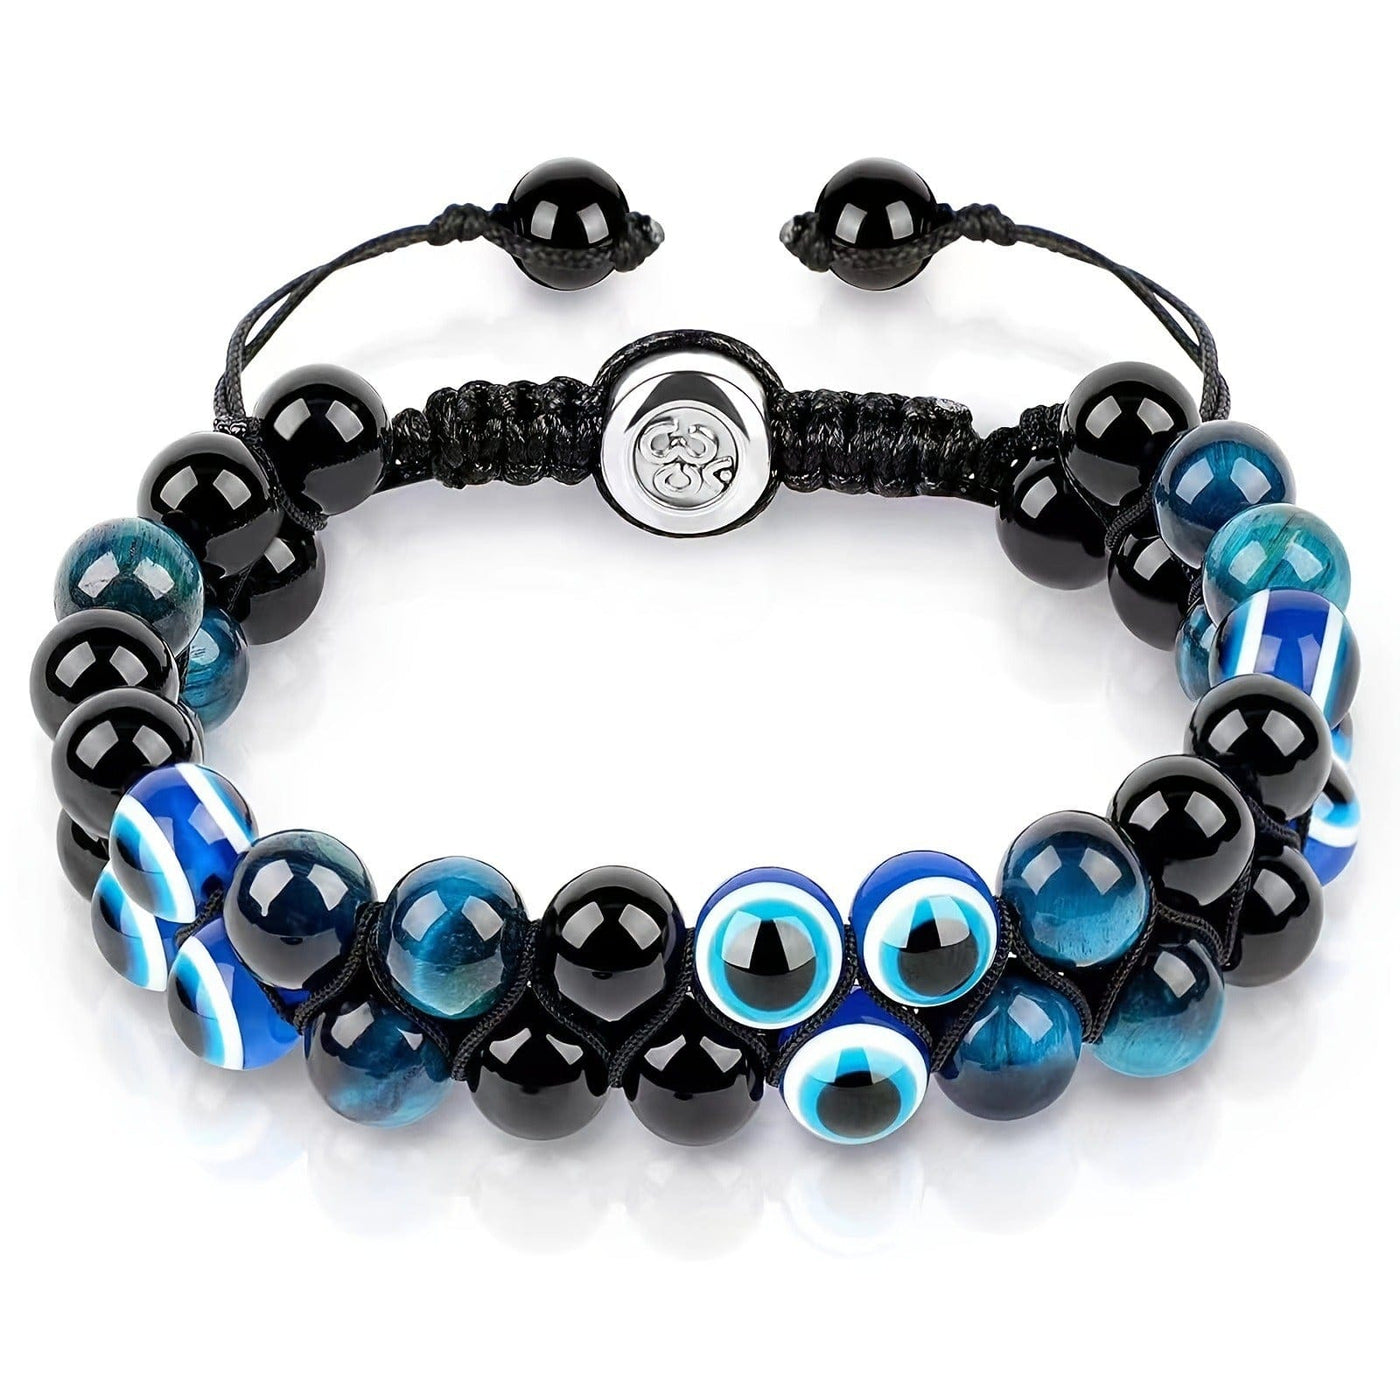 Bracelet - Men's Tiger Eye Agate Adjustable Black Magnet Yoga Bracelet